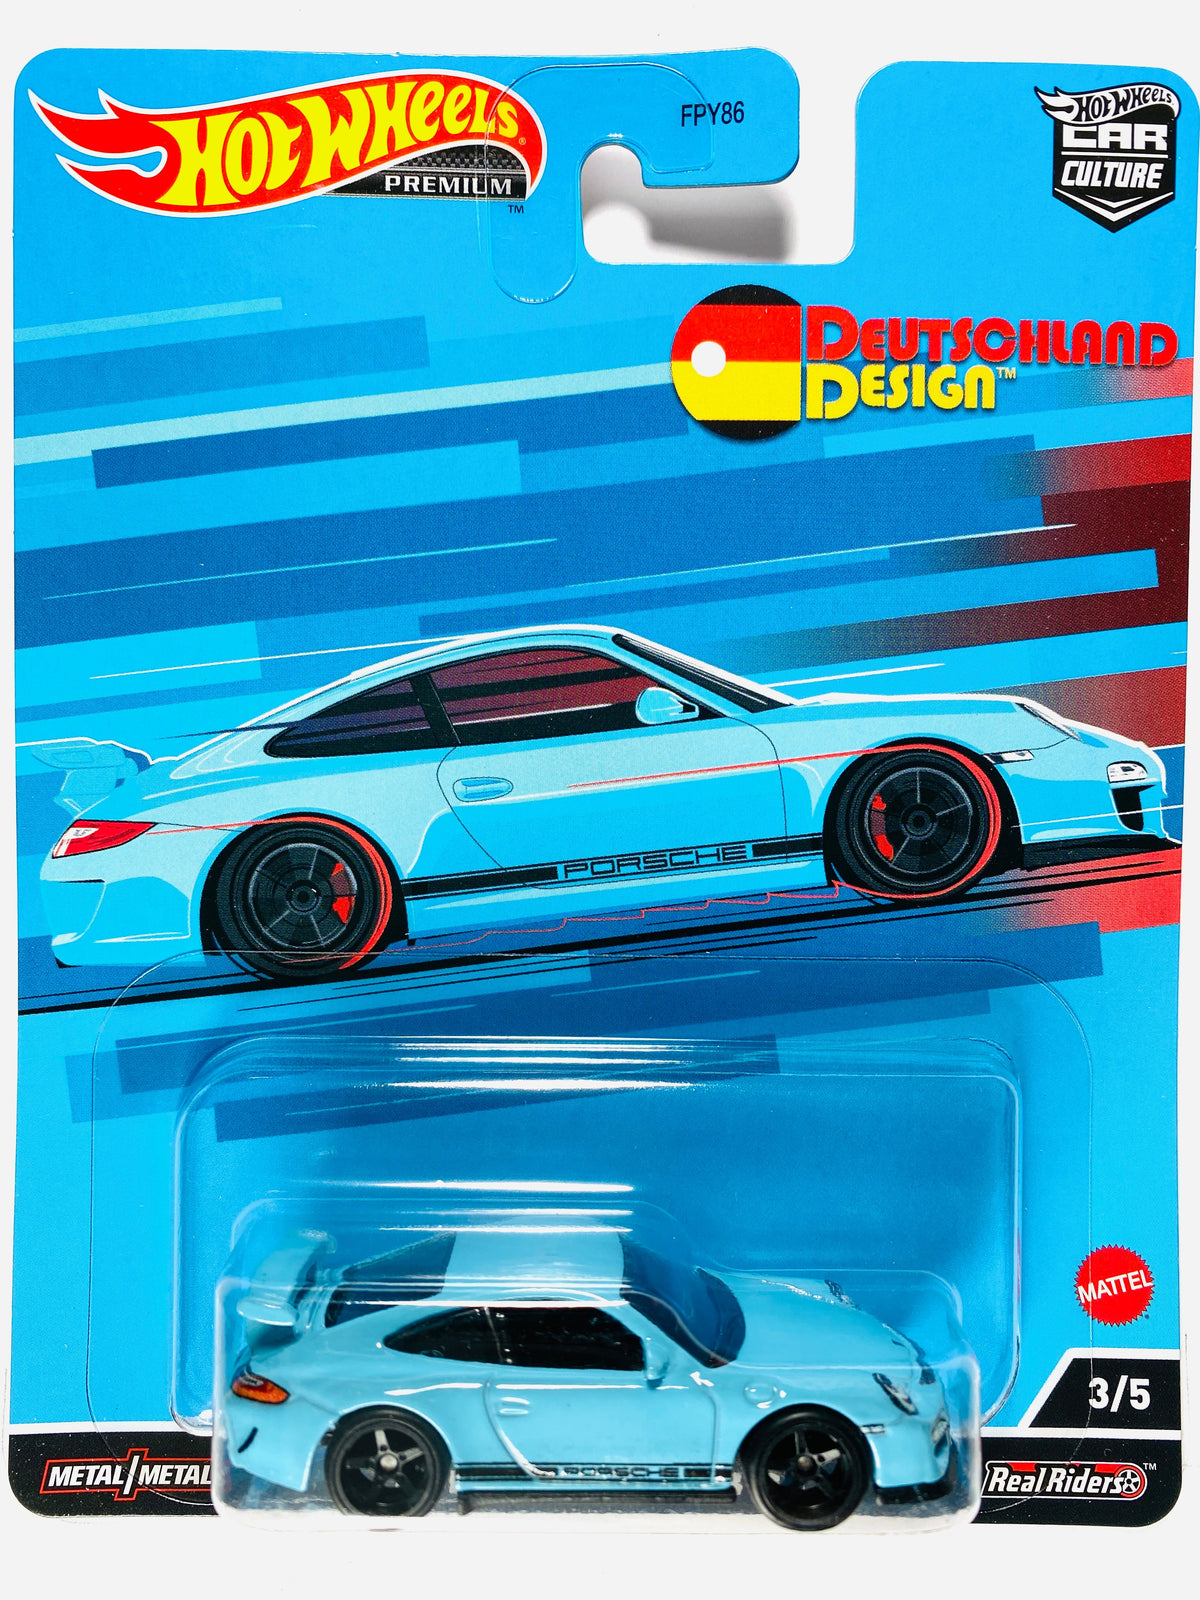 Hot Wheels Premium Deutschland Design Porsche 911 GT3 RS